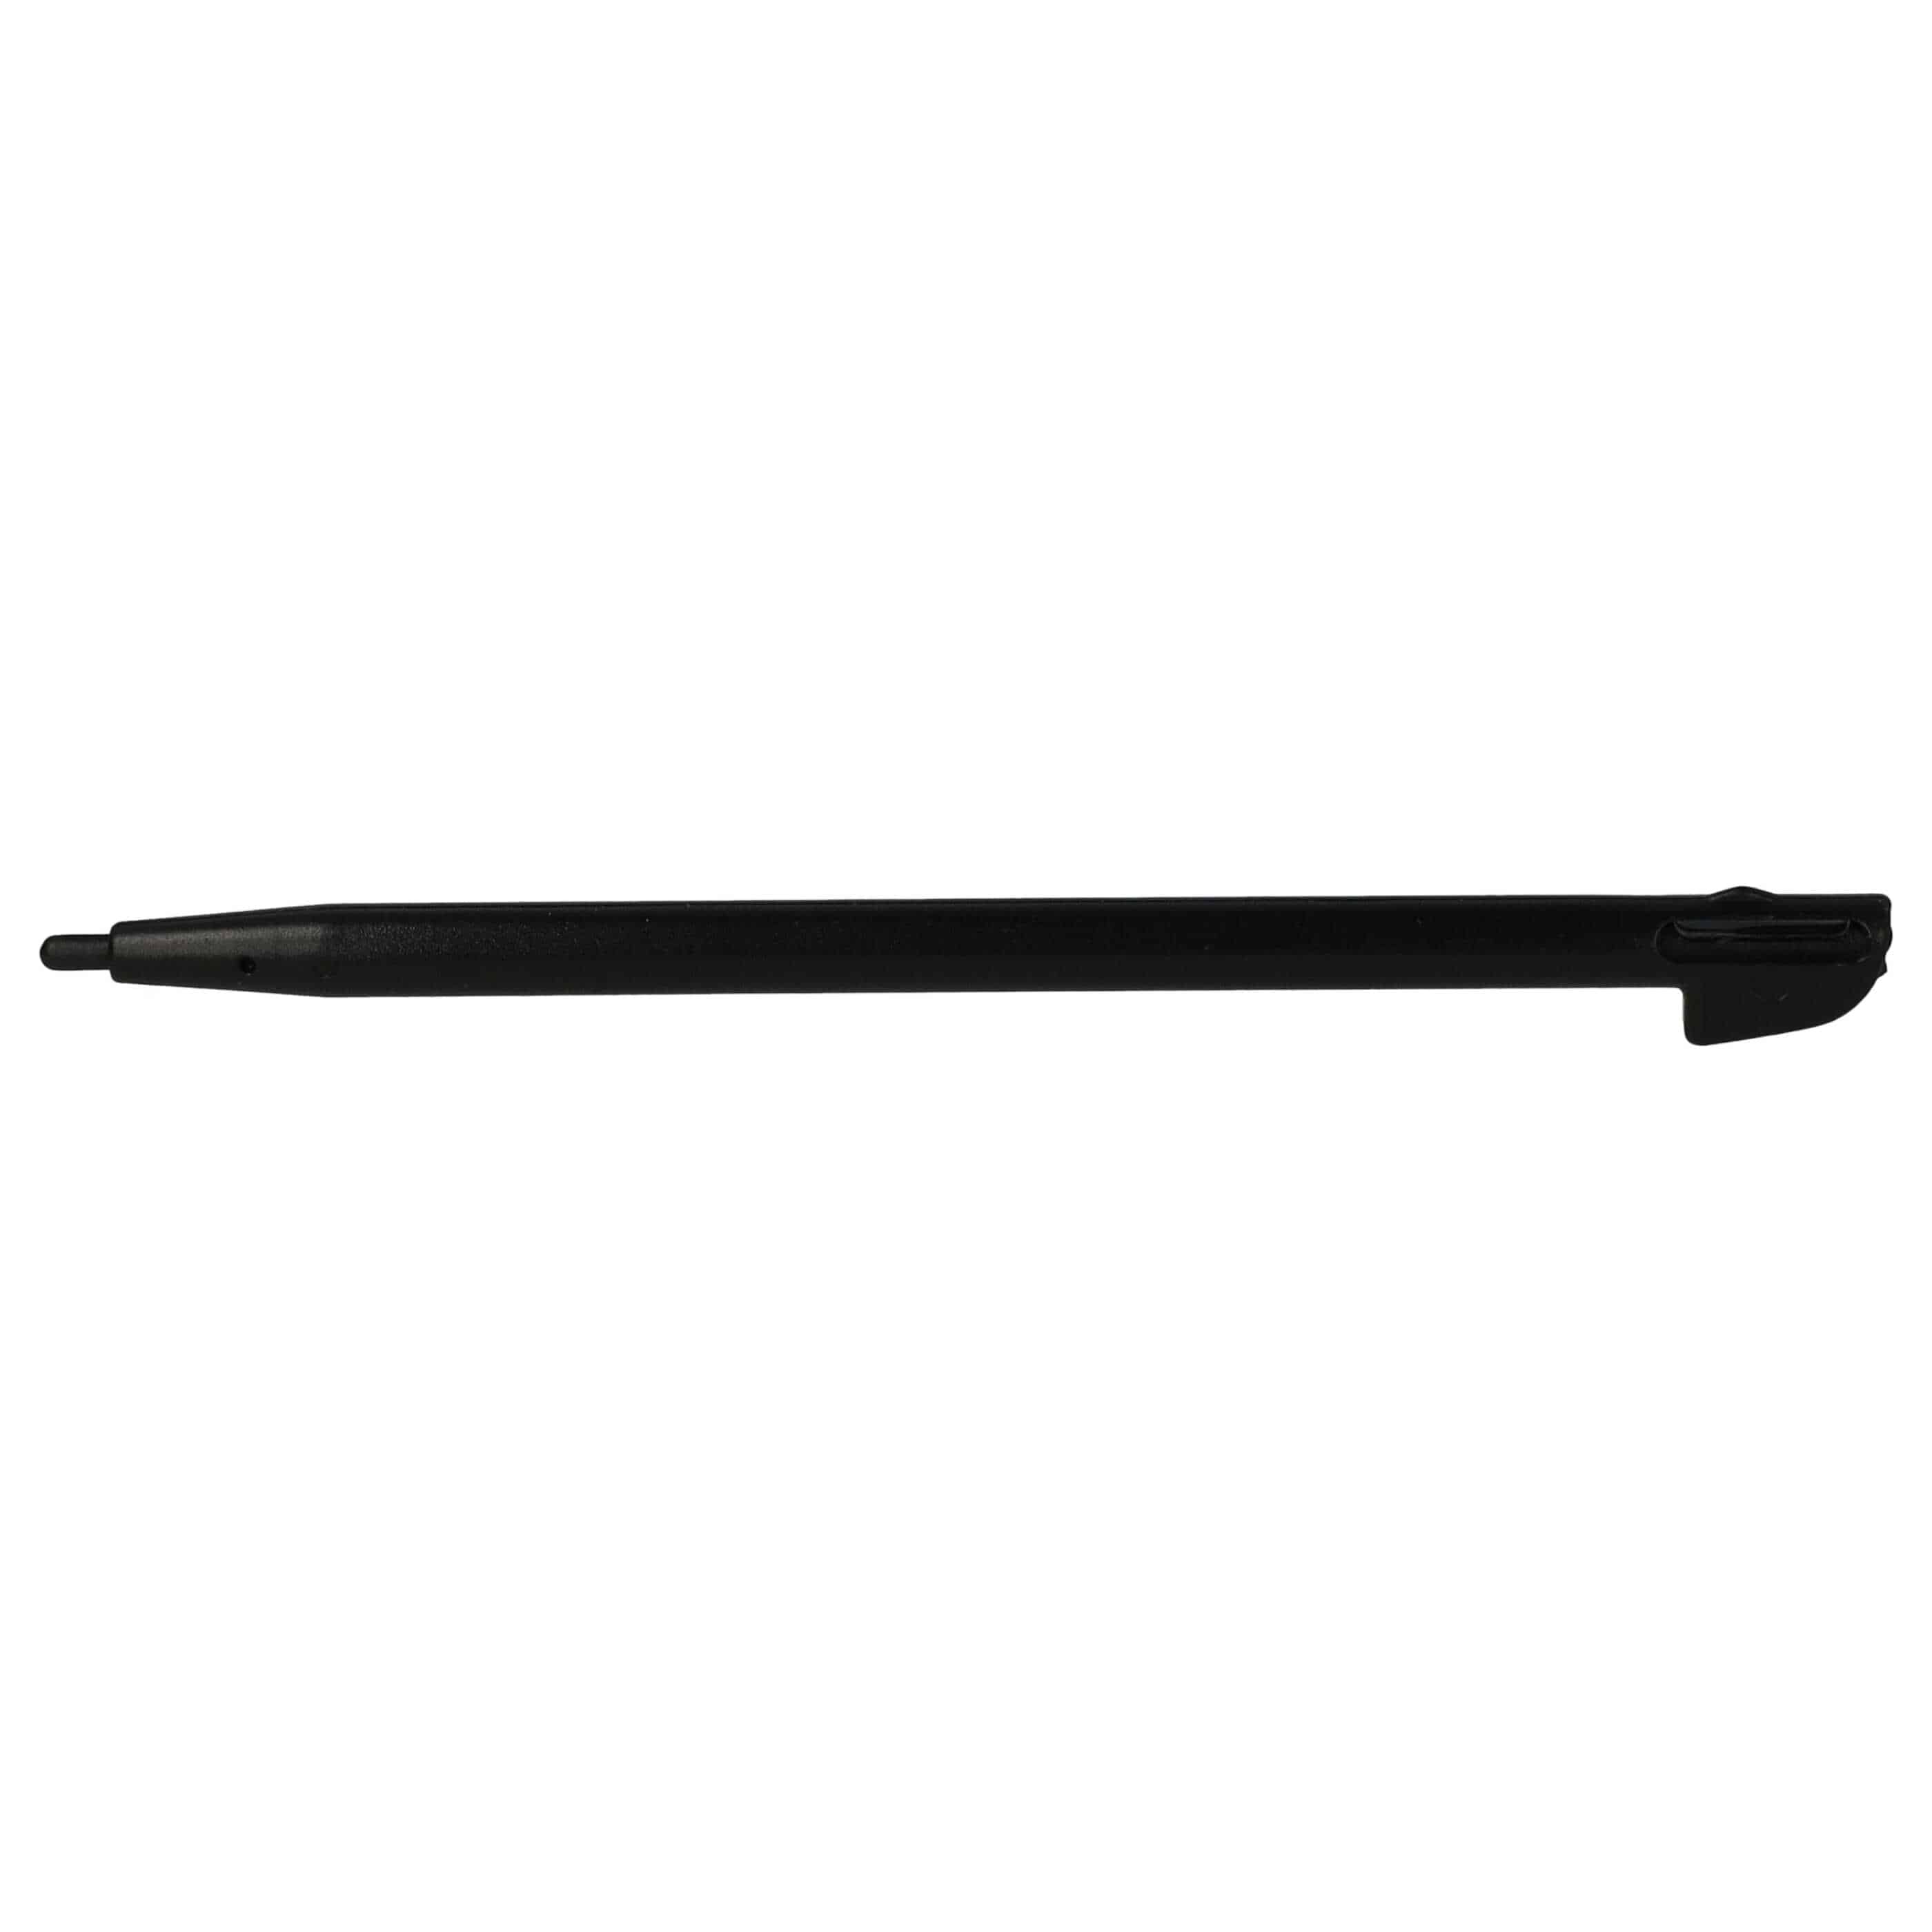 10x lápices compatible con Nintendo Wii U consola de juego - negro, blanco